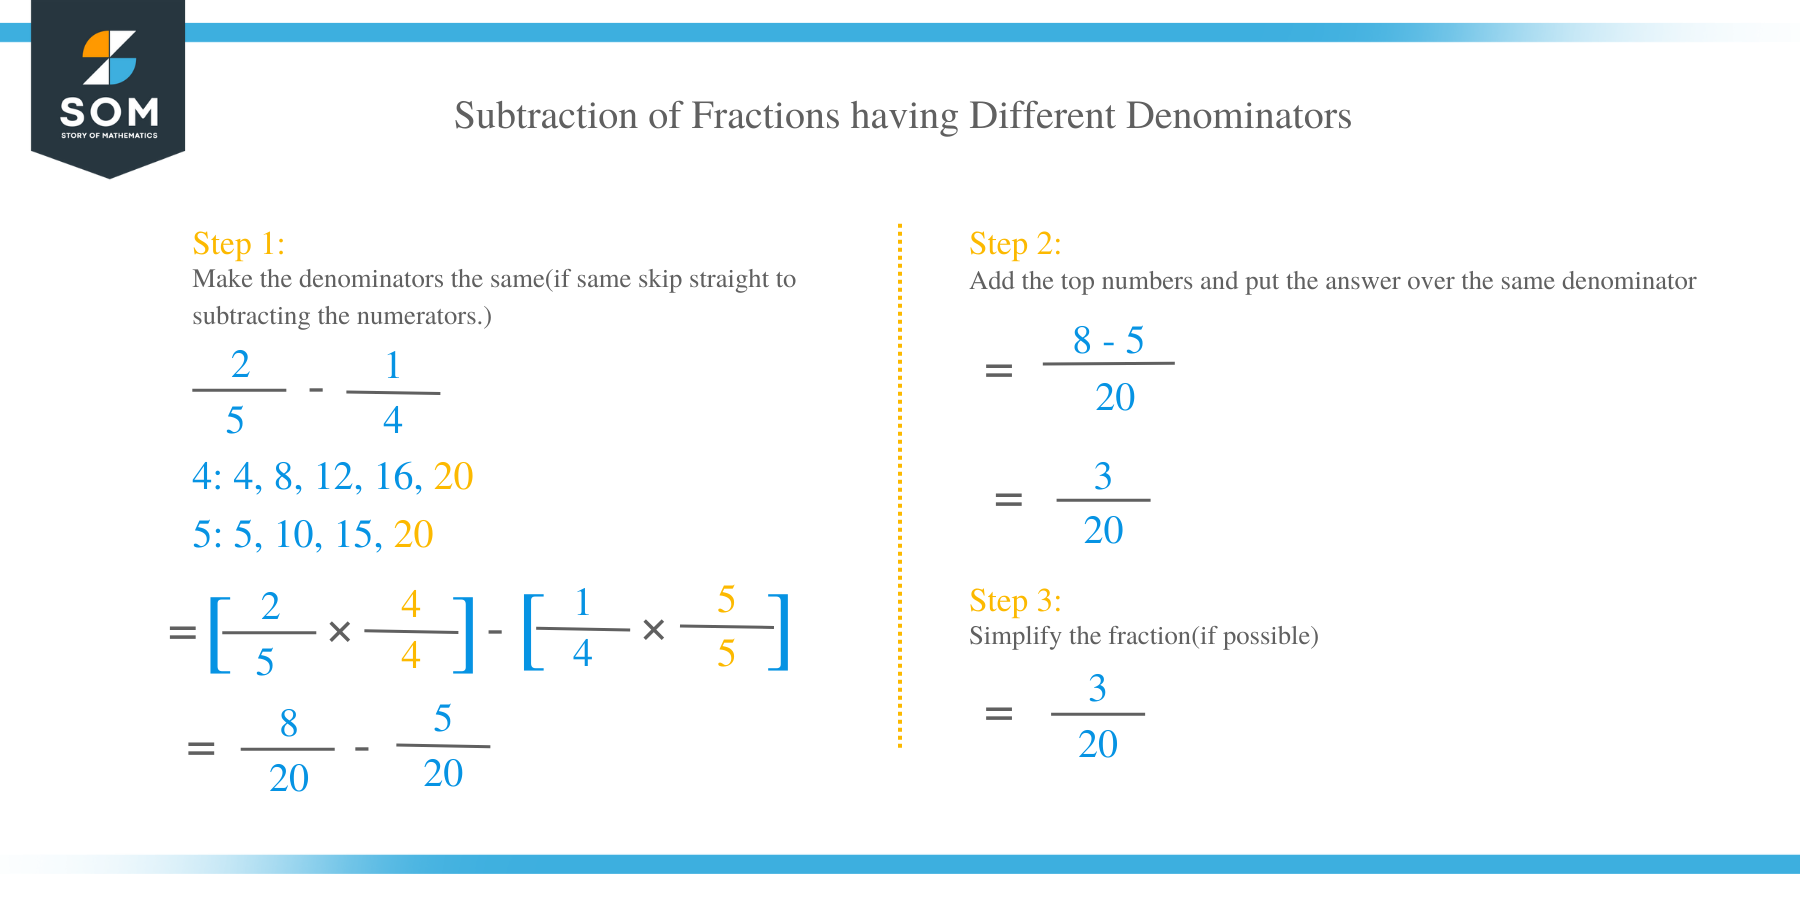 Subtraction of Fractions having Different Denominators